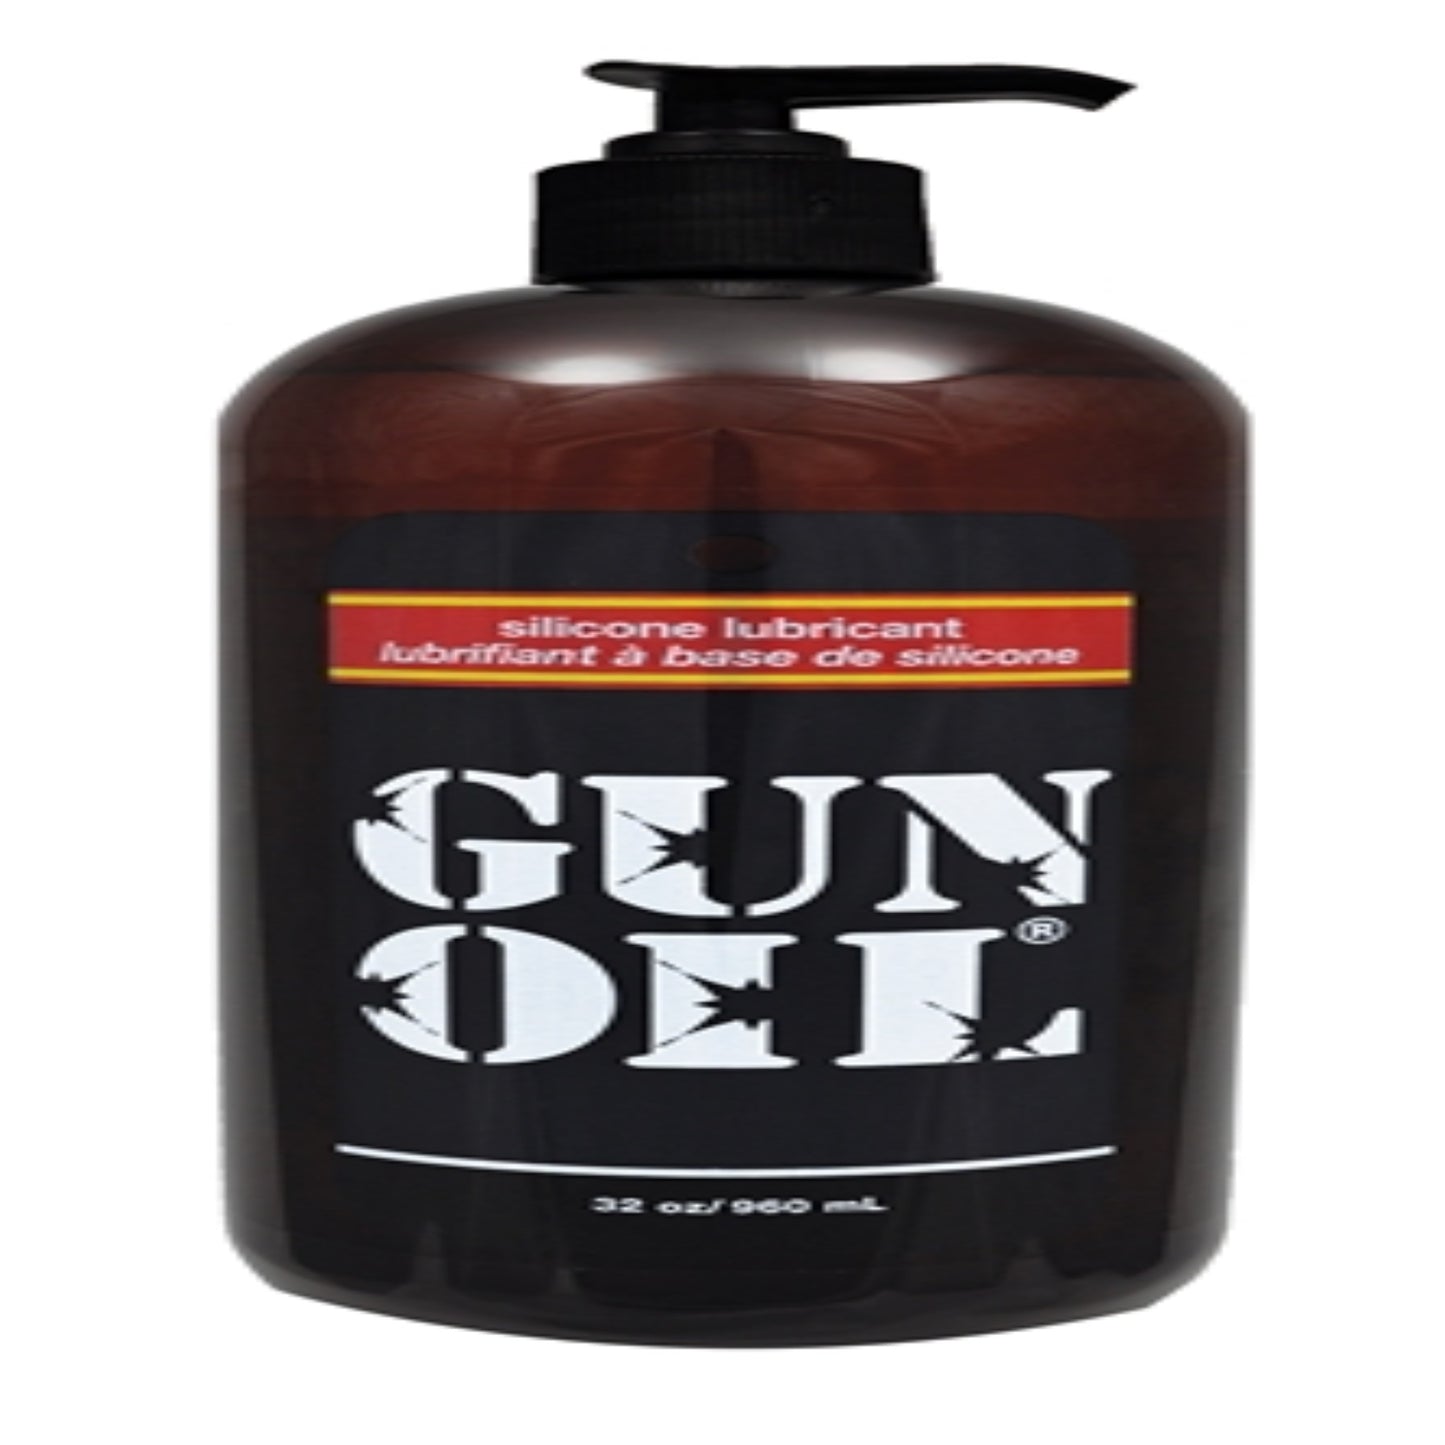 gun-oil-silicone-lubricant